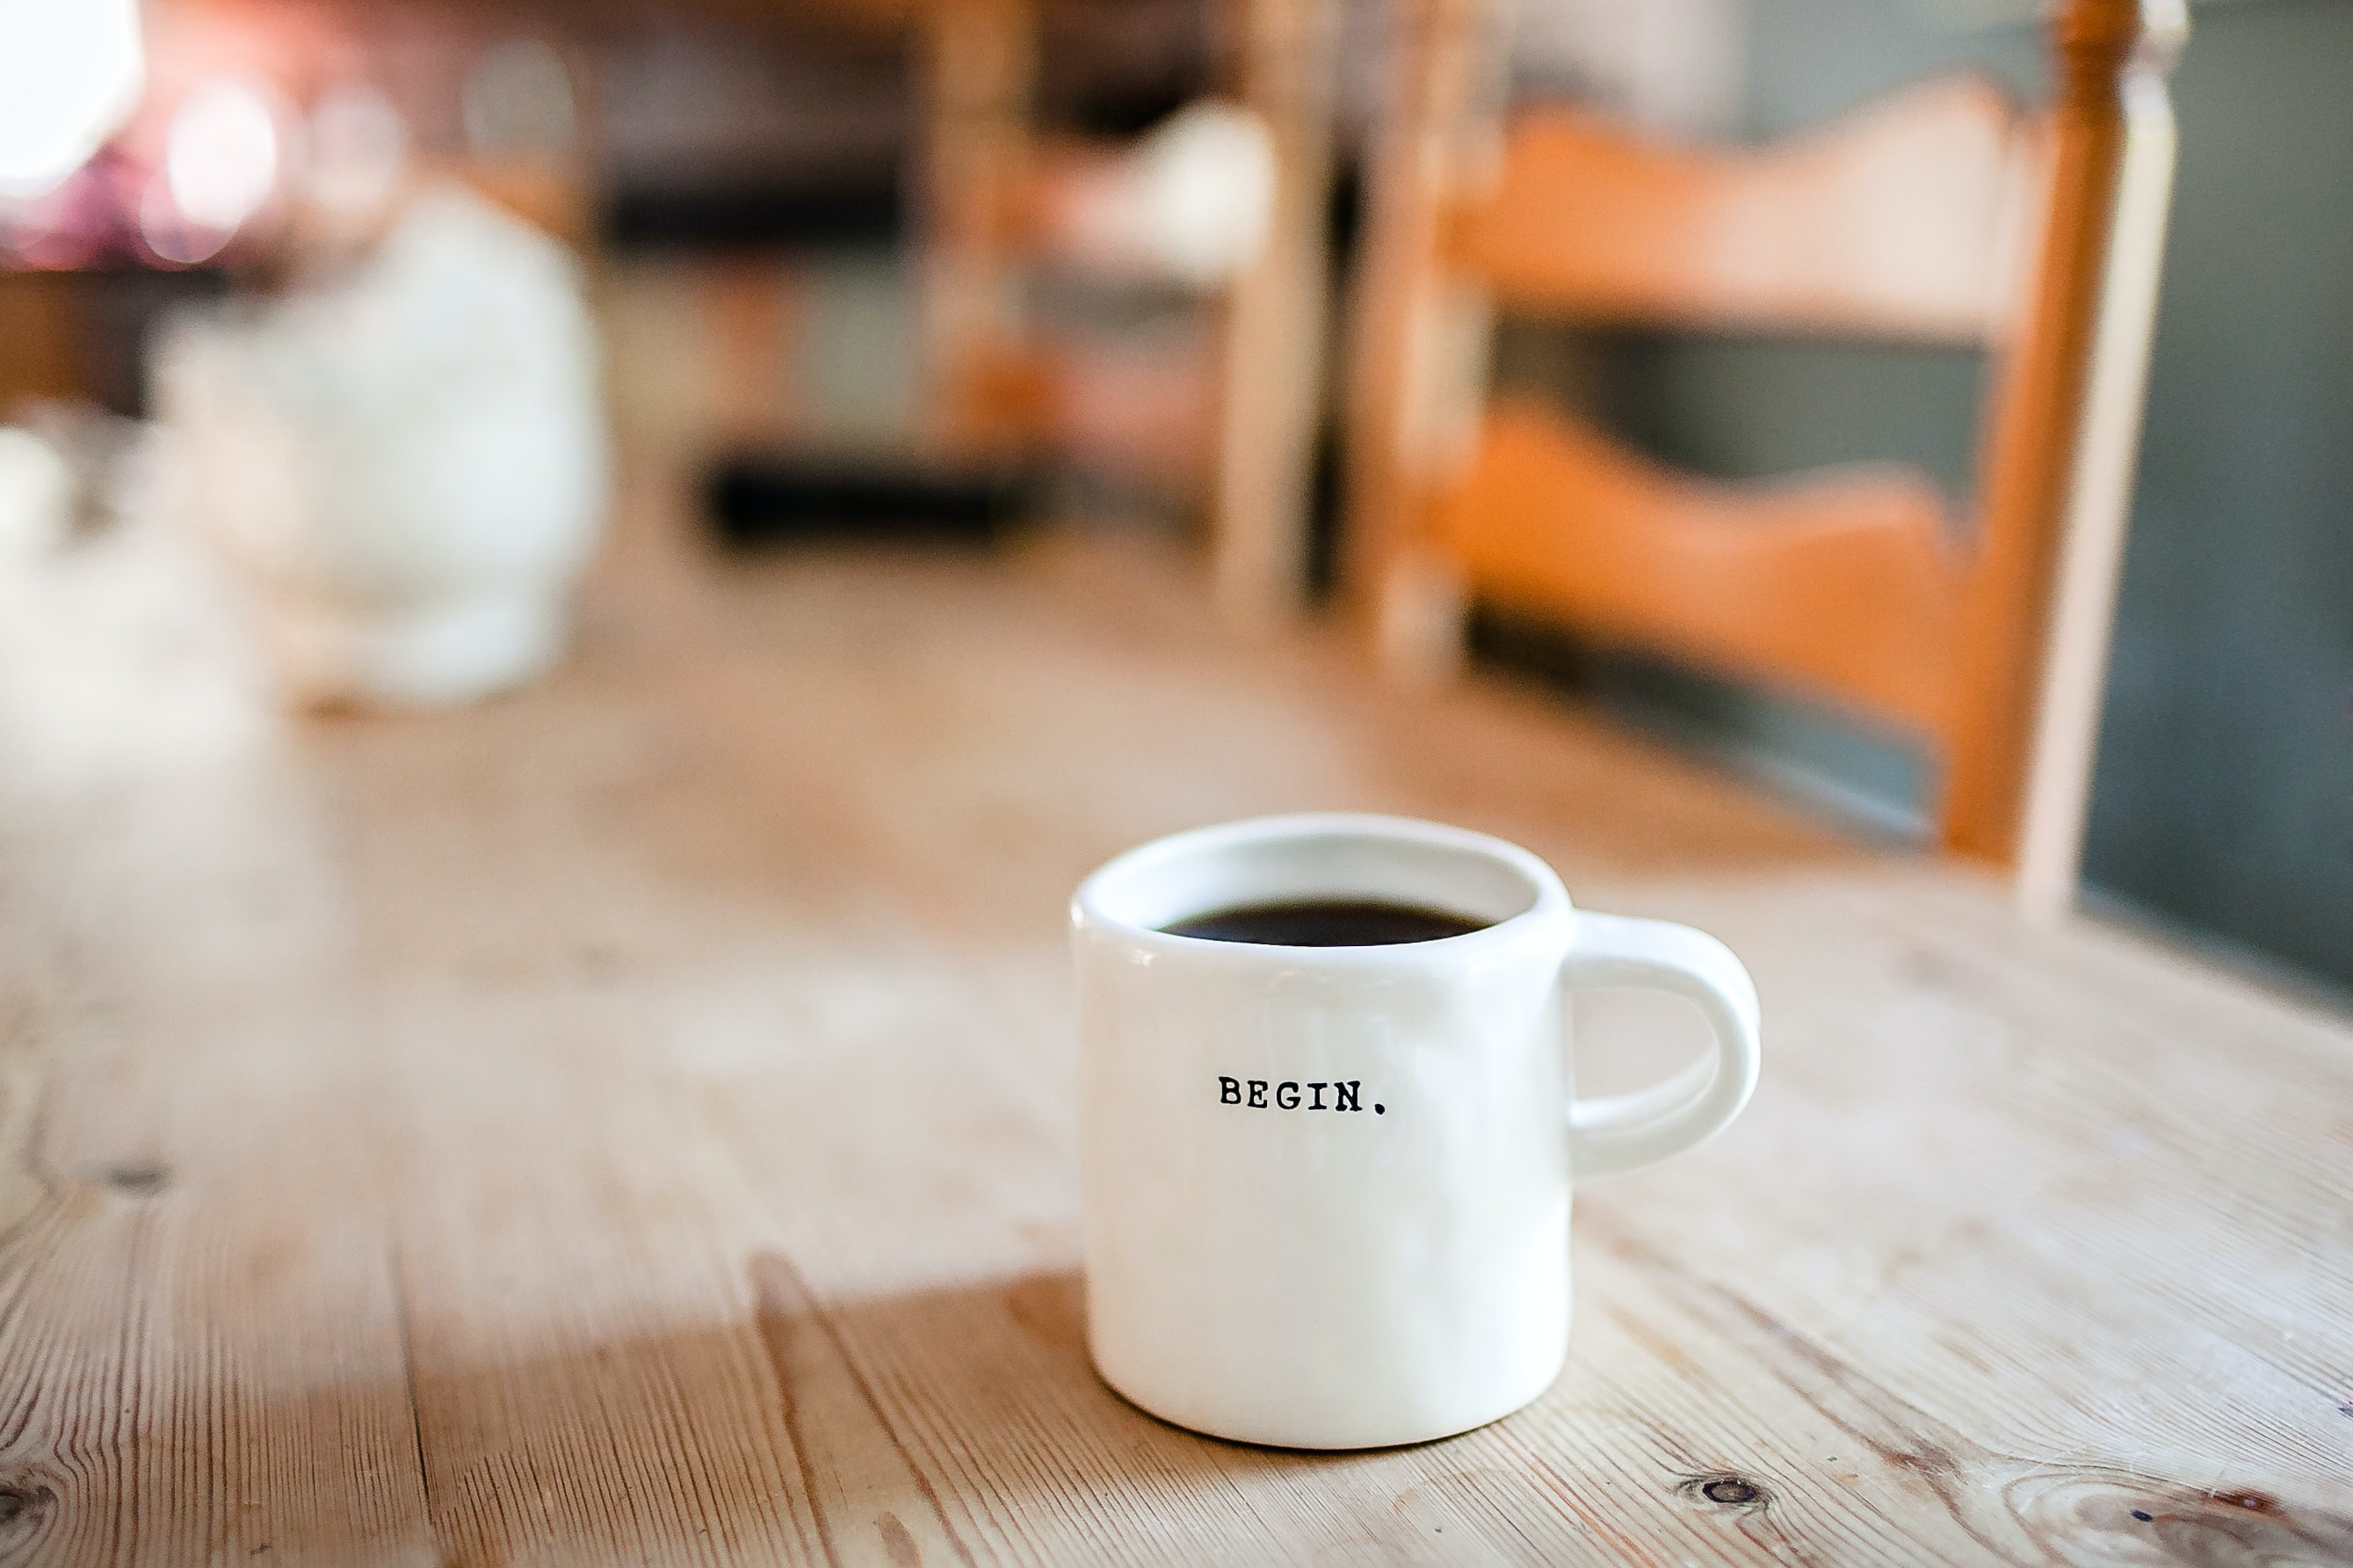 Une tasse sur laquelle est inscrit le mot « Begin », remplie de café sur une table.